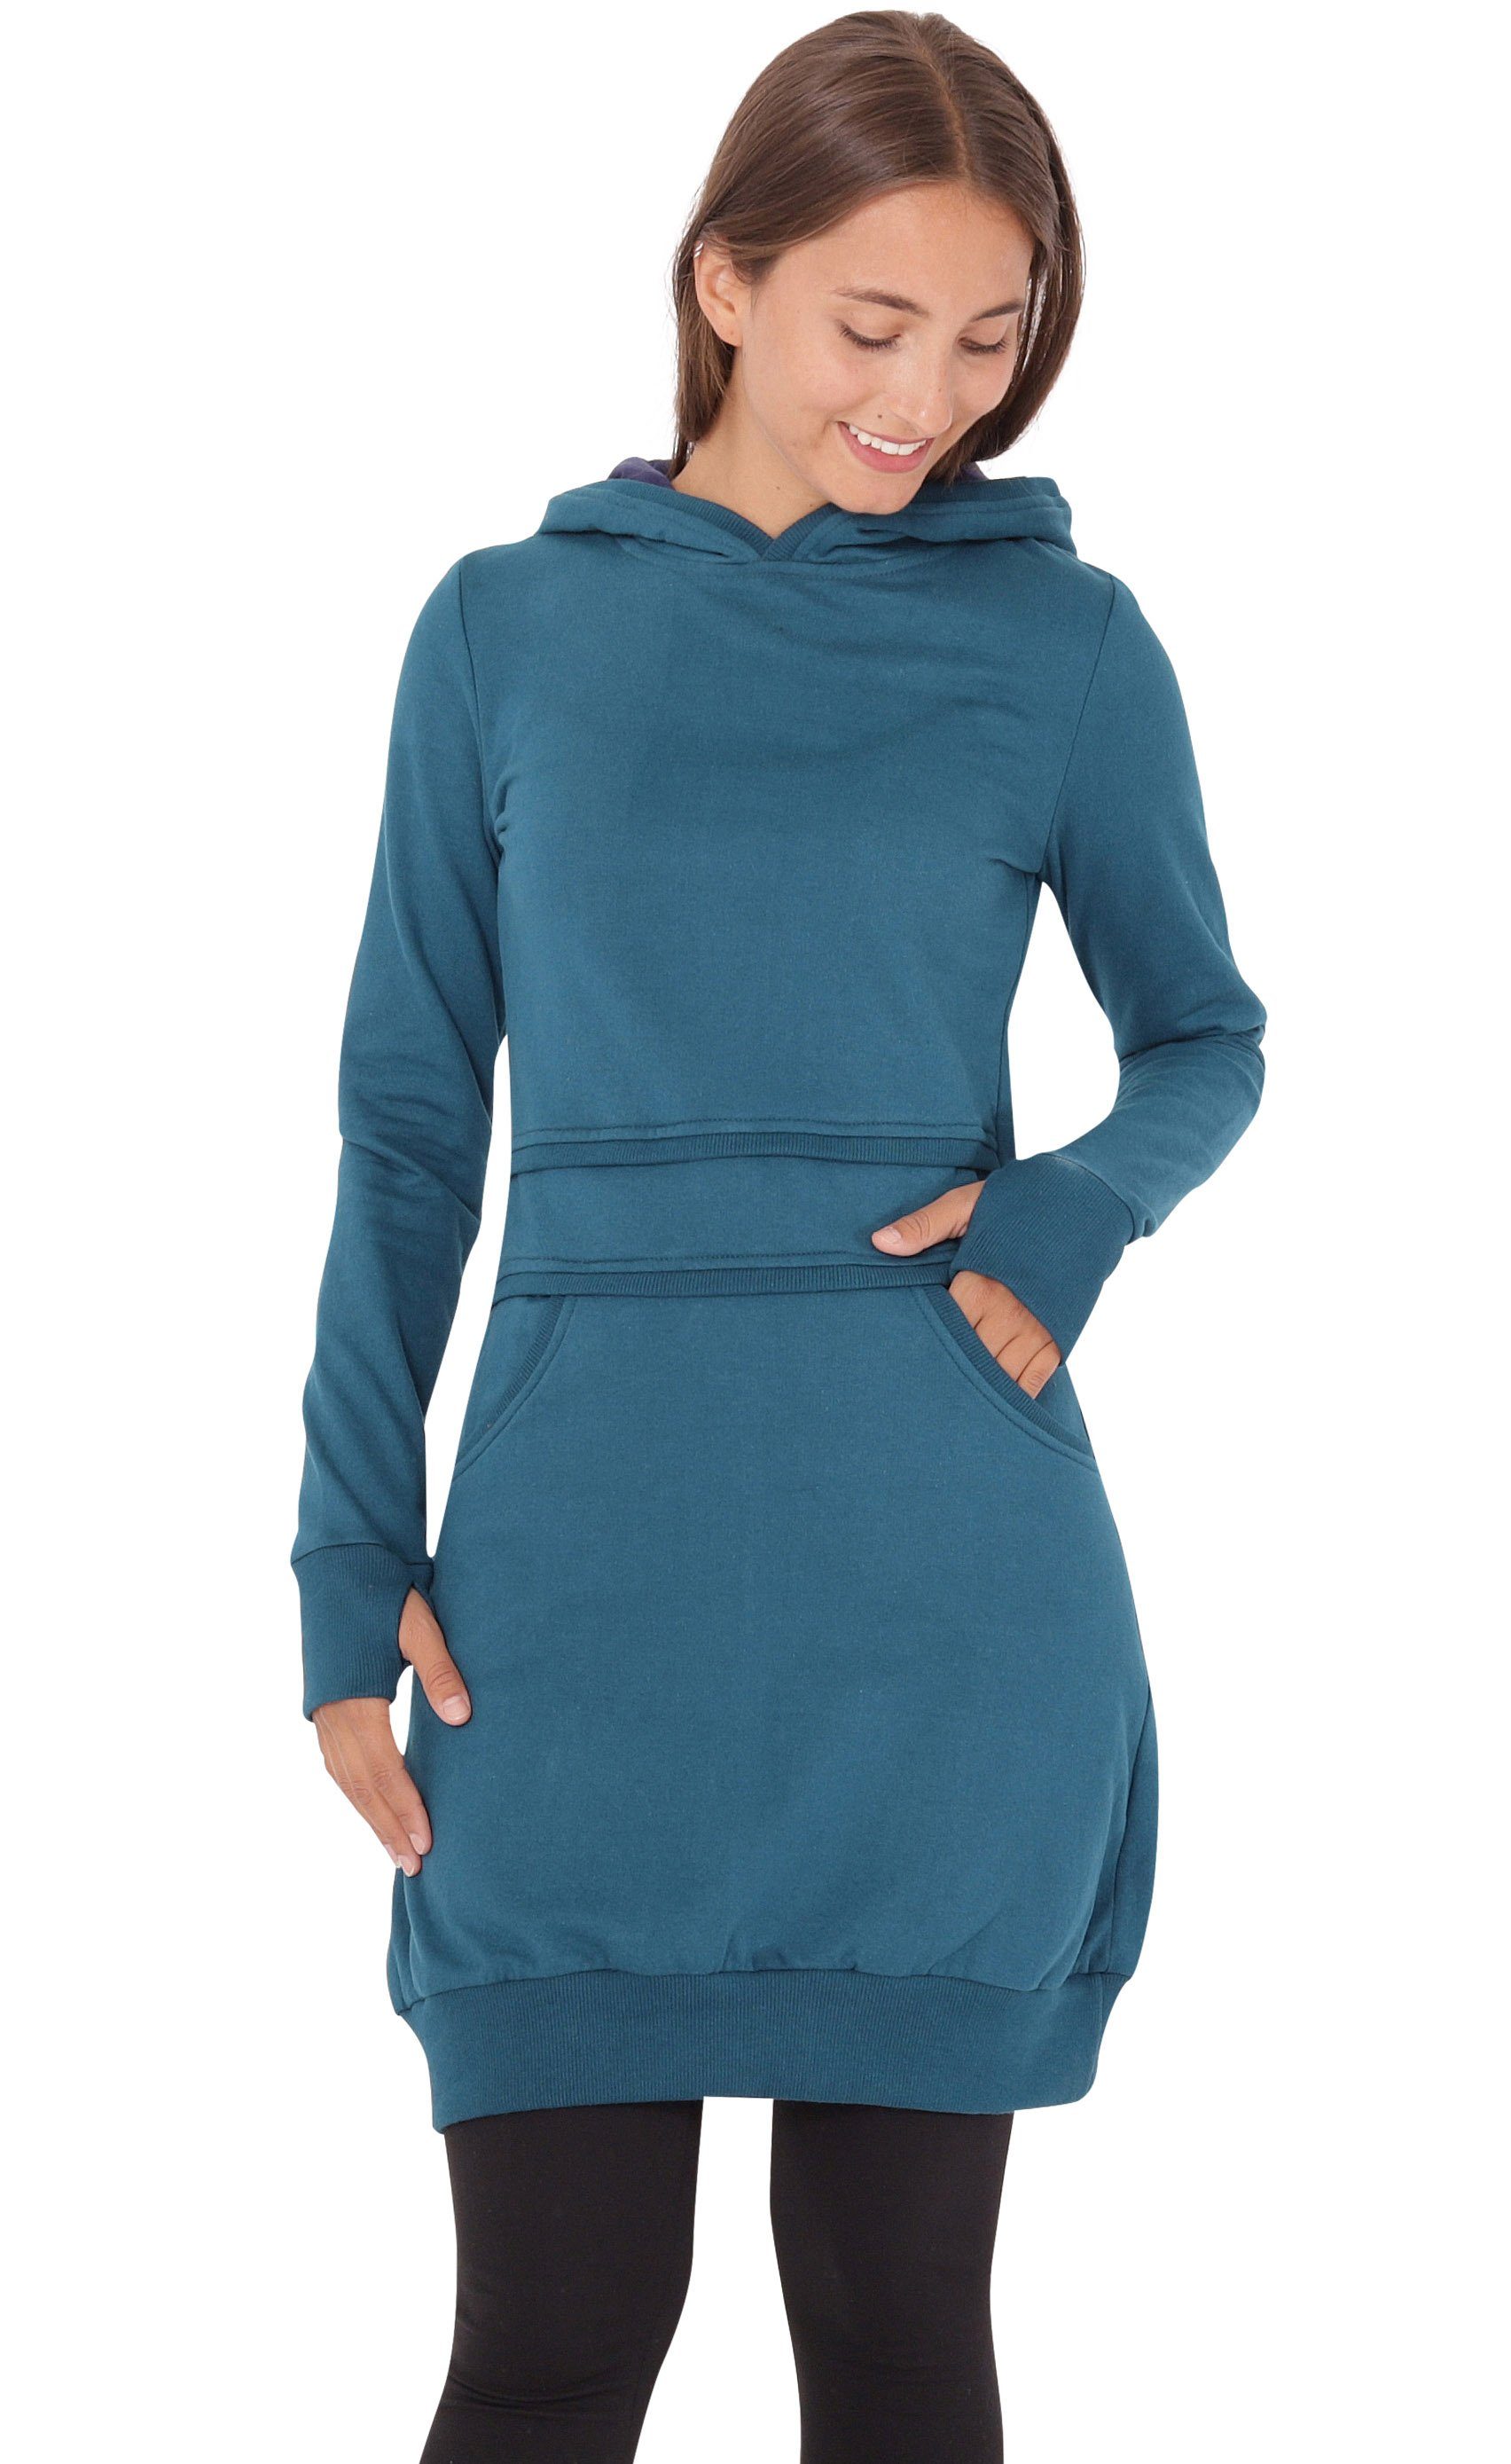 PUREWONDER Sweatkleid Kapuzenpullover-Kleid dr19 einfarbiges Hoodie-Kleid | Sweatkleider